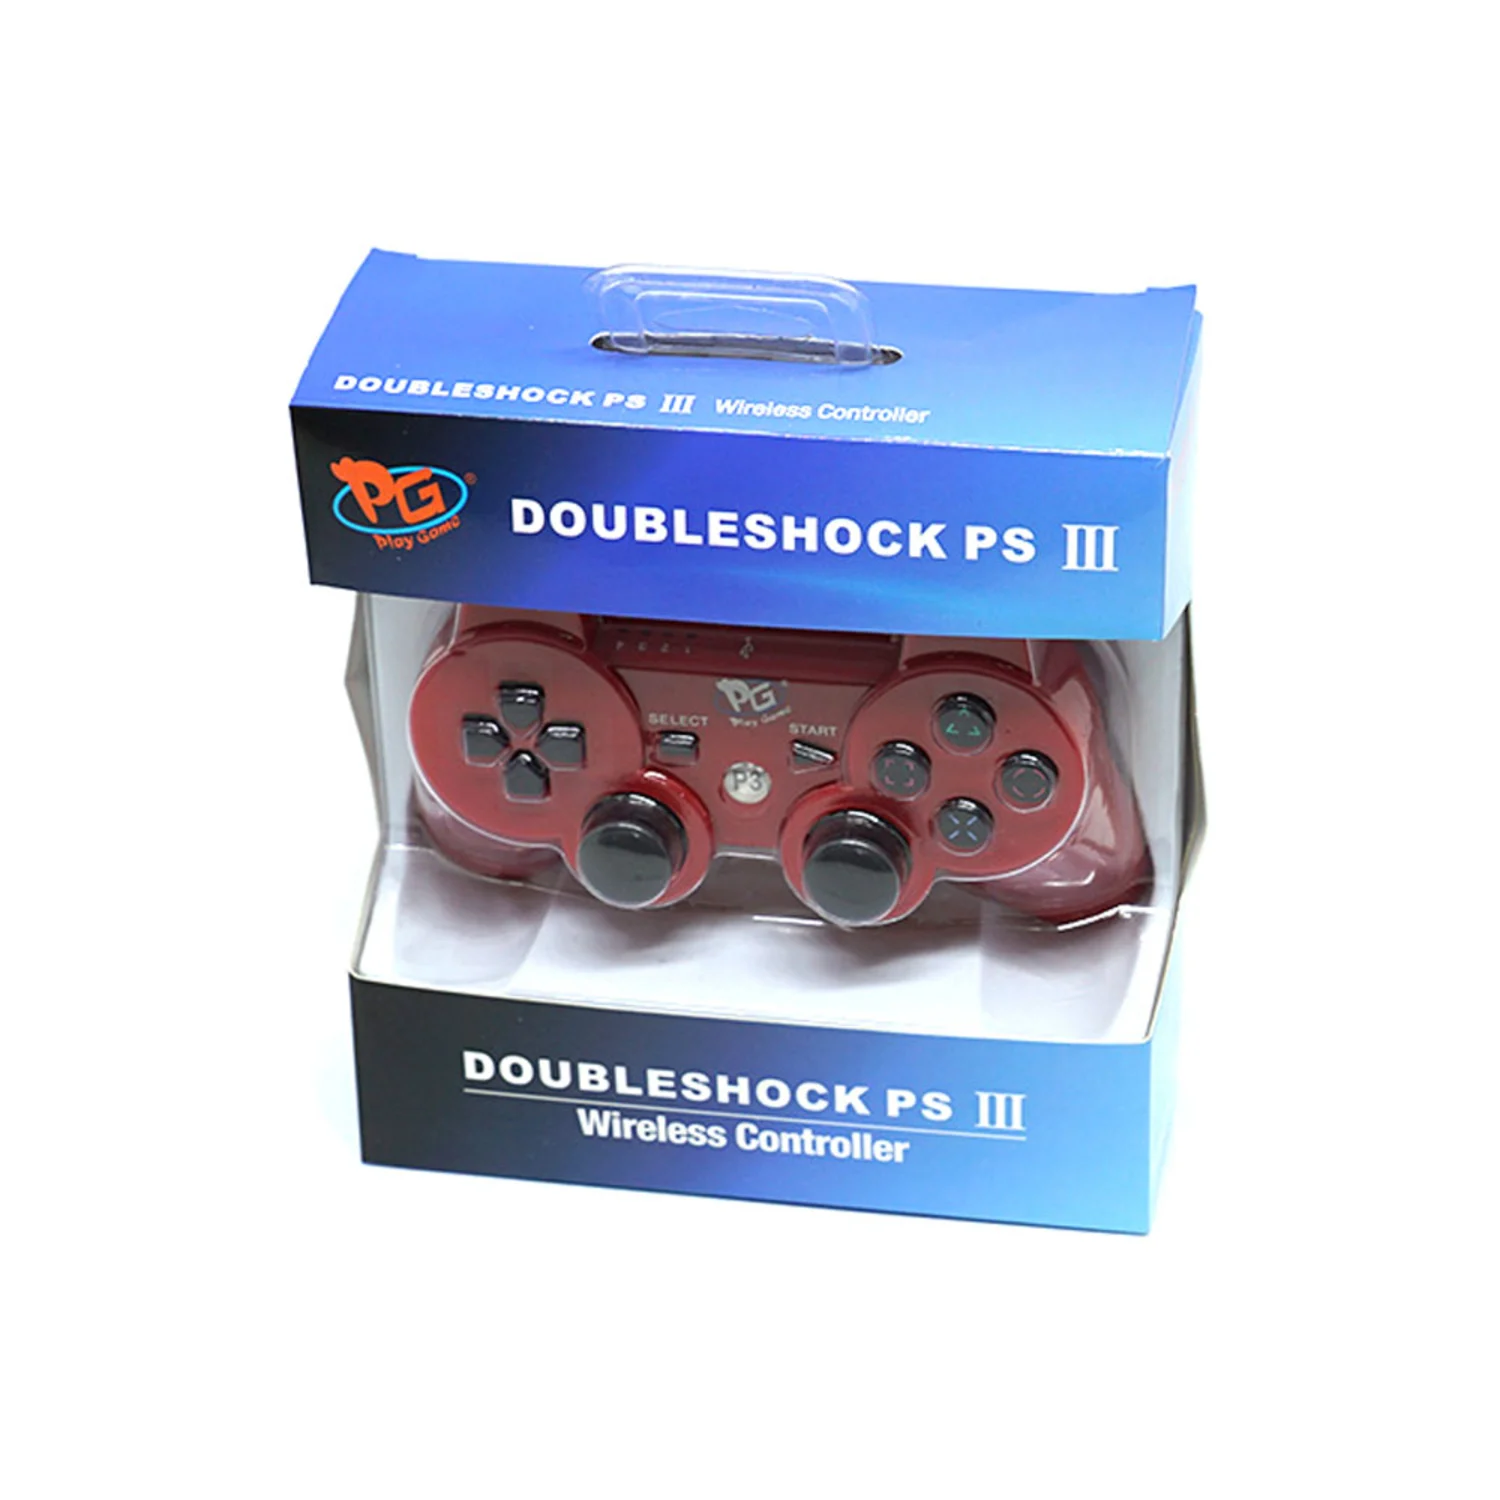 Controle Play Game Doubleshock para PS3 - Vermelho